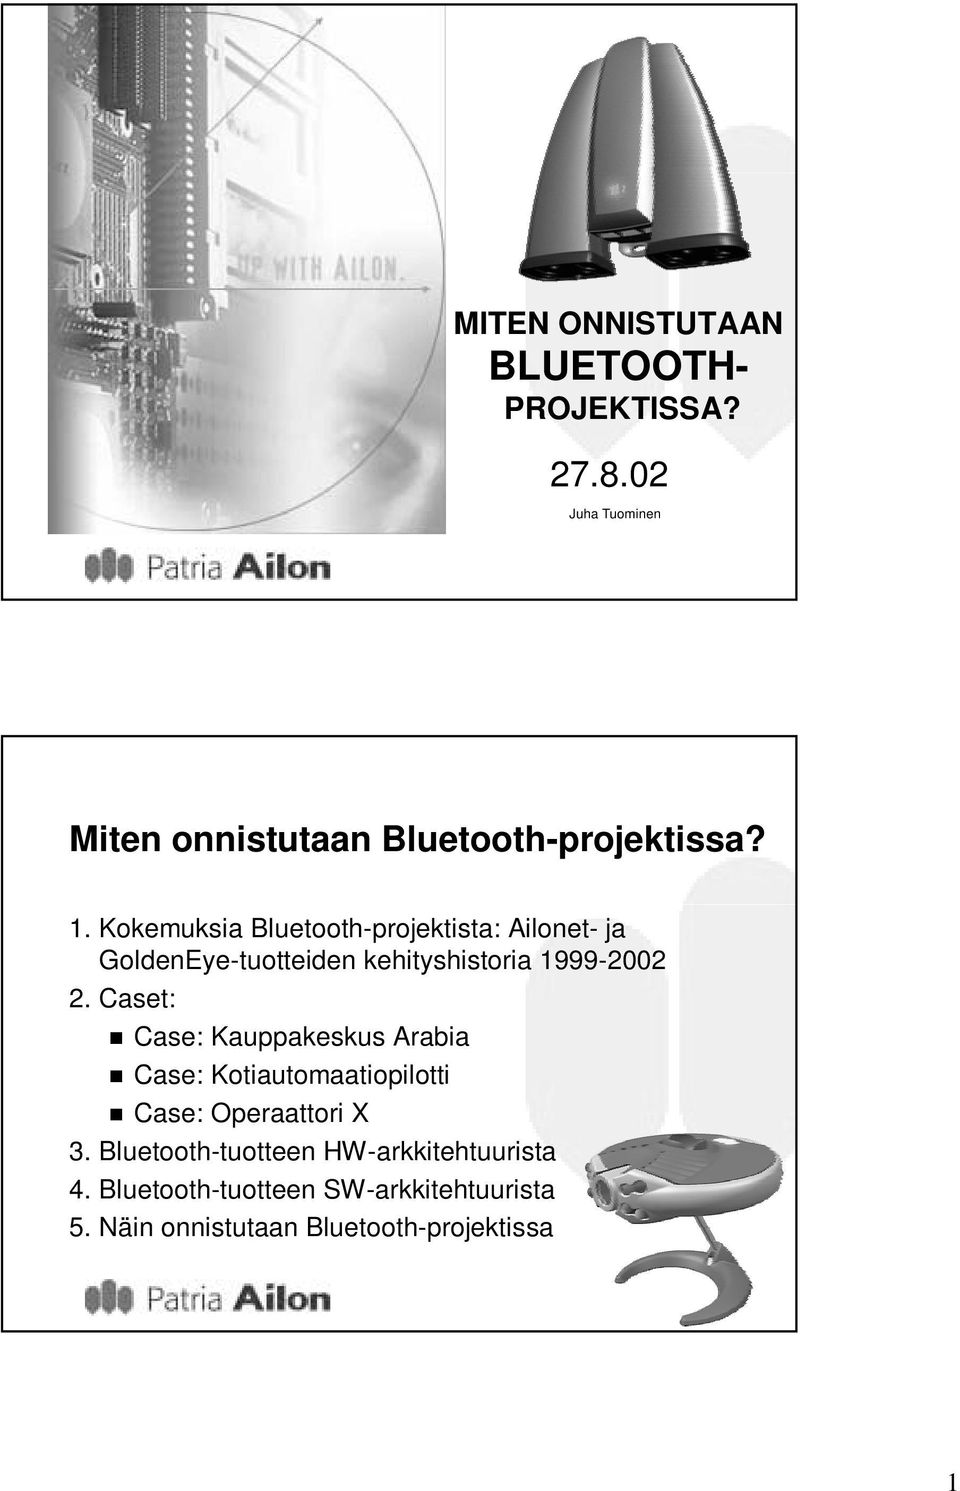 Kokemuksia Bluetooth-projektista: Ailonet- ja GoldenEye-tuotteiden kehityshistoria 1999-2002 2.